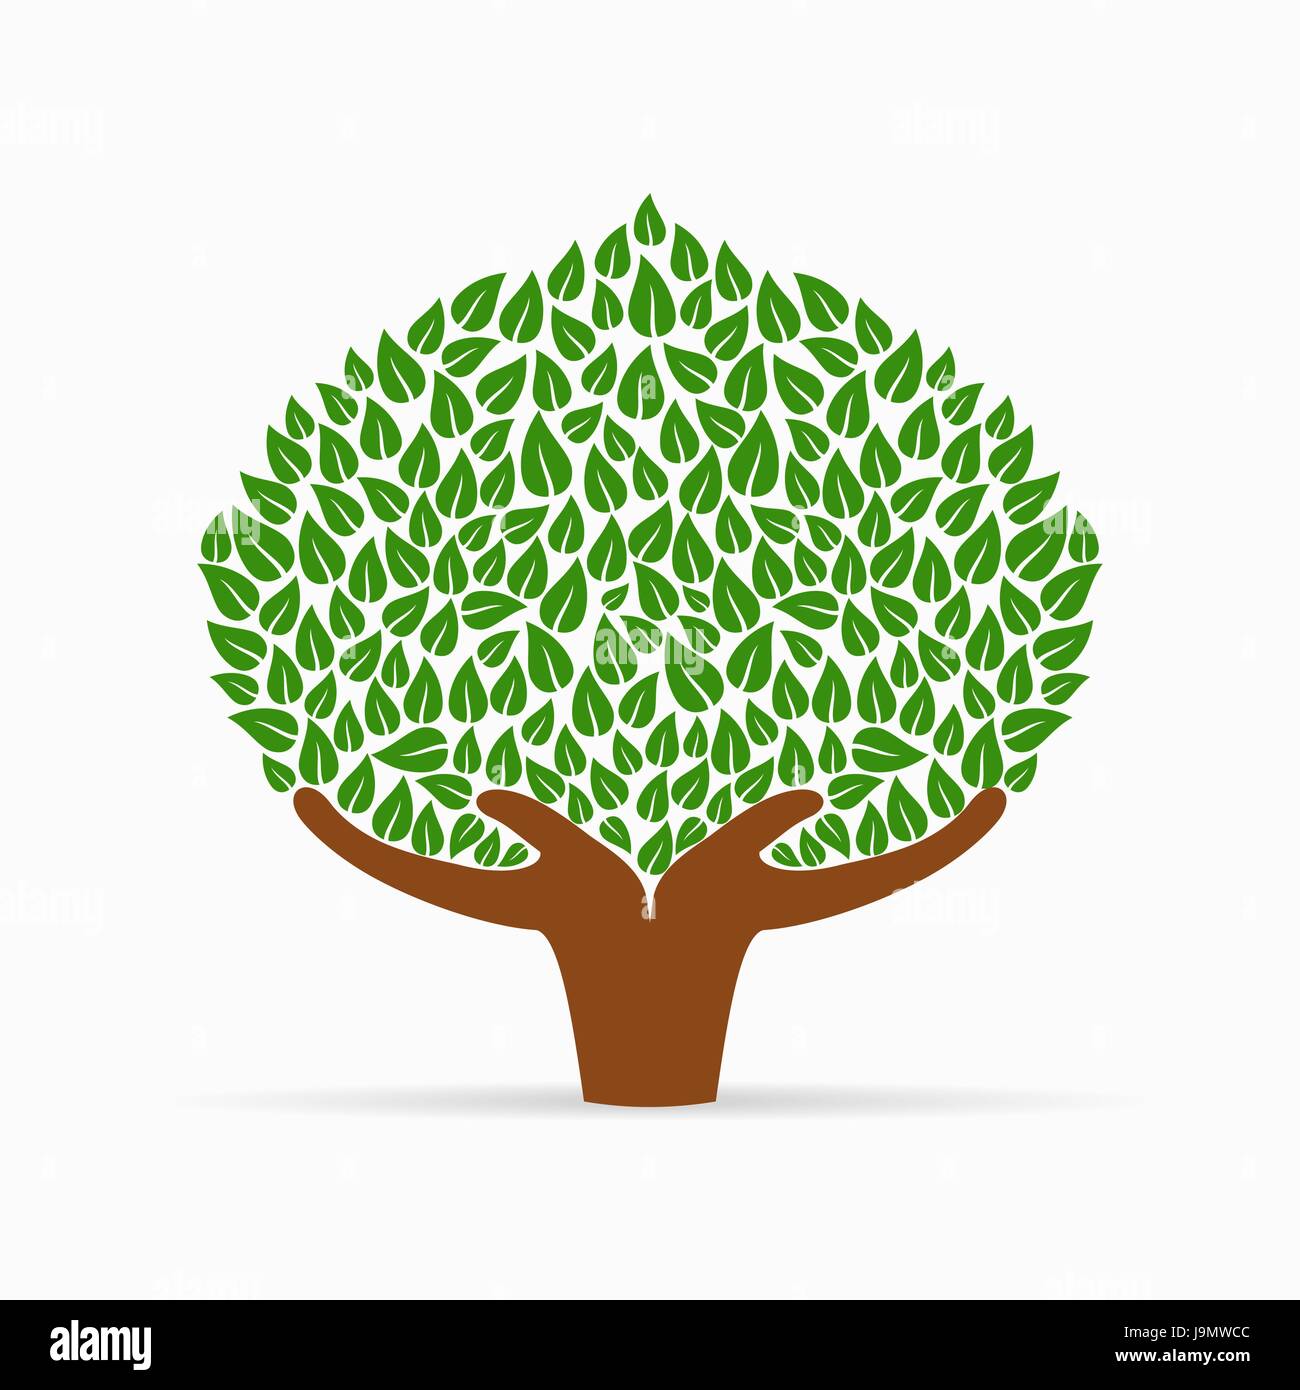 Symbole de l'arbre vert avec des mains. Concept illustration pour aider à l'organisation du projet, l'environnement ou de travail social. Vecteur EPS10. Illustration de Vecteur